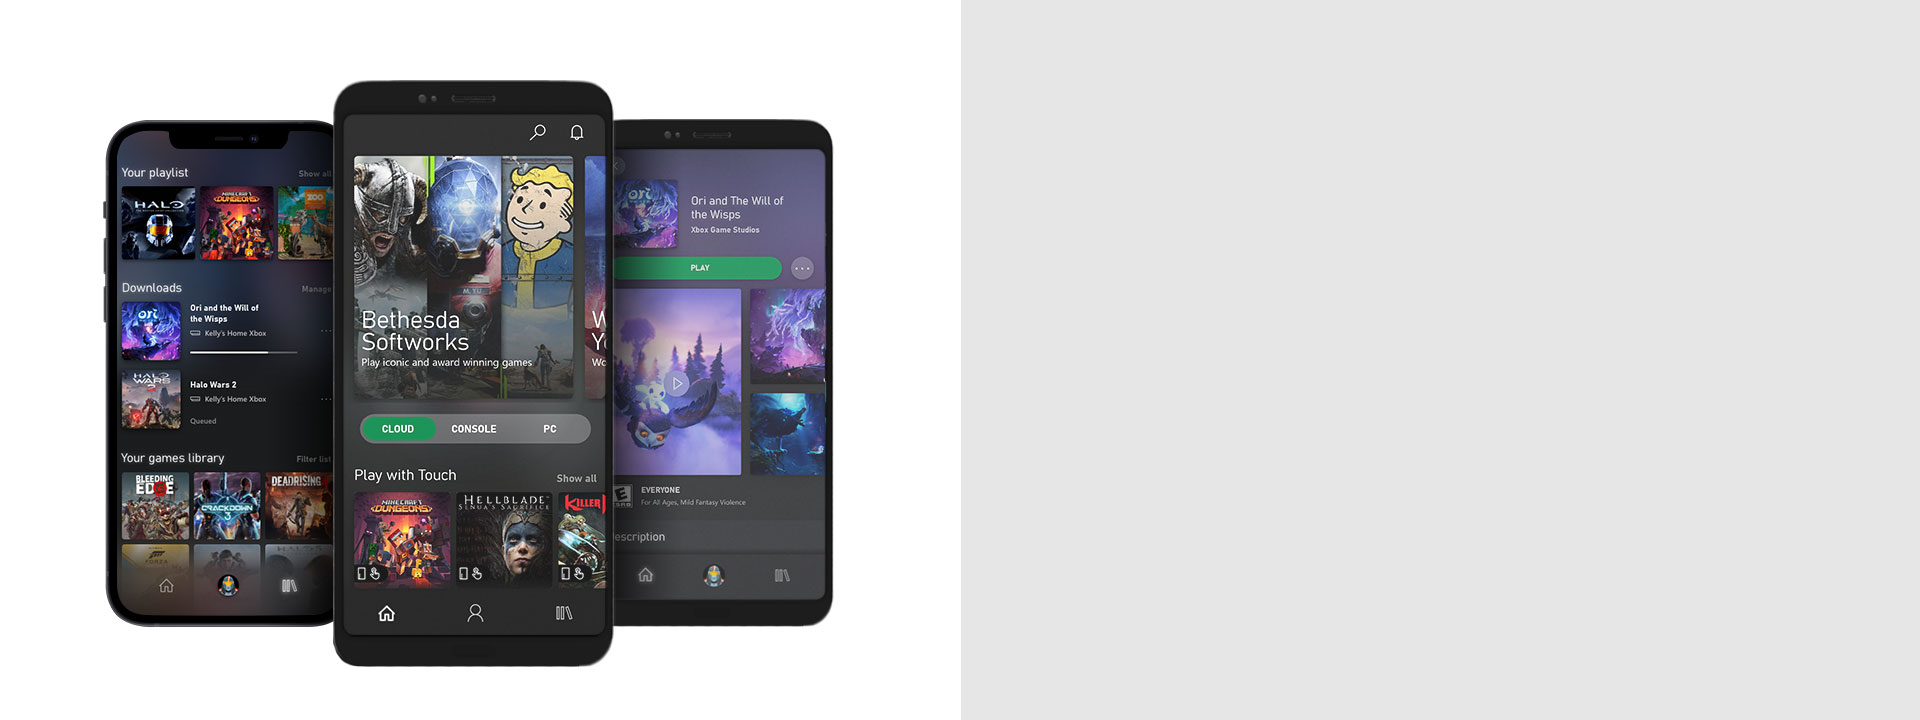 Xbox Game Pass モバイル アプリの UI を表示している 3 台のスマートフォン